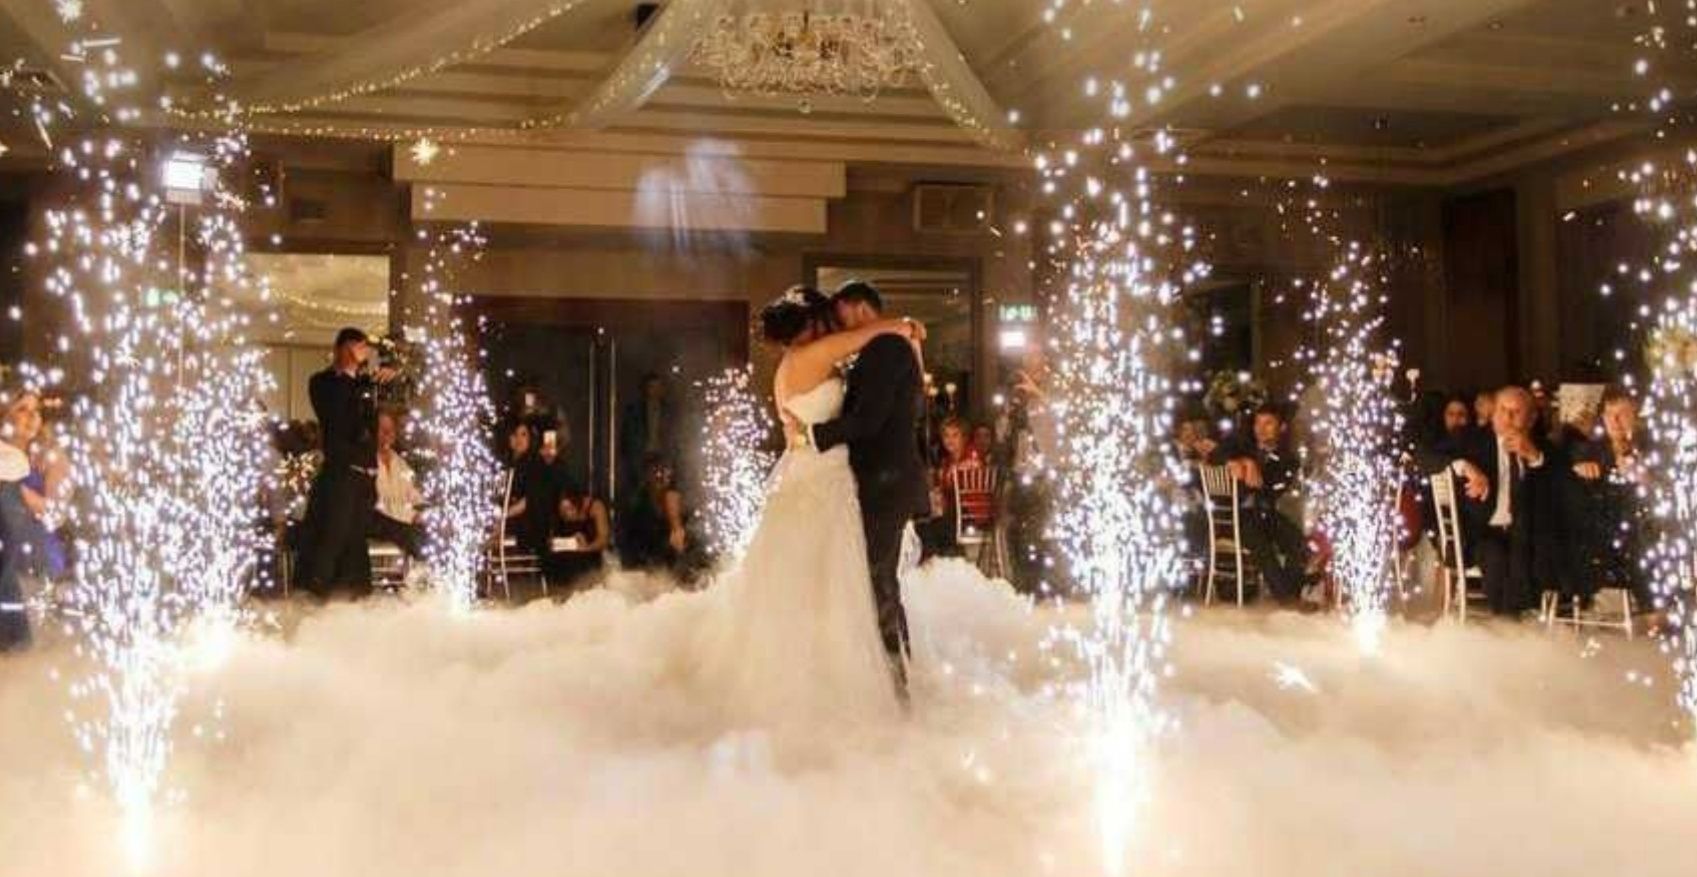 Ciężki dym taniec w chmurach fontanny iskier fotolustro love miłość